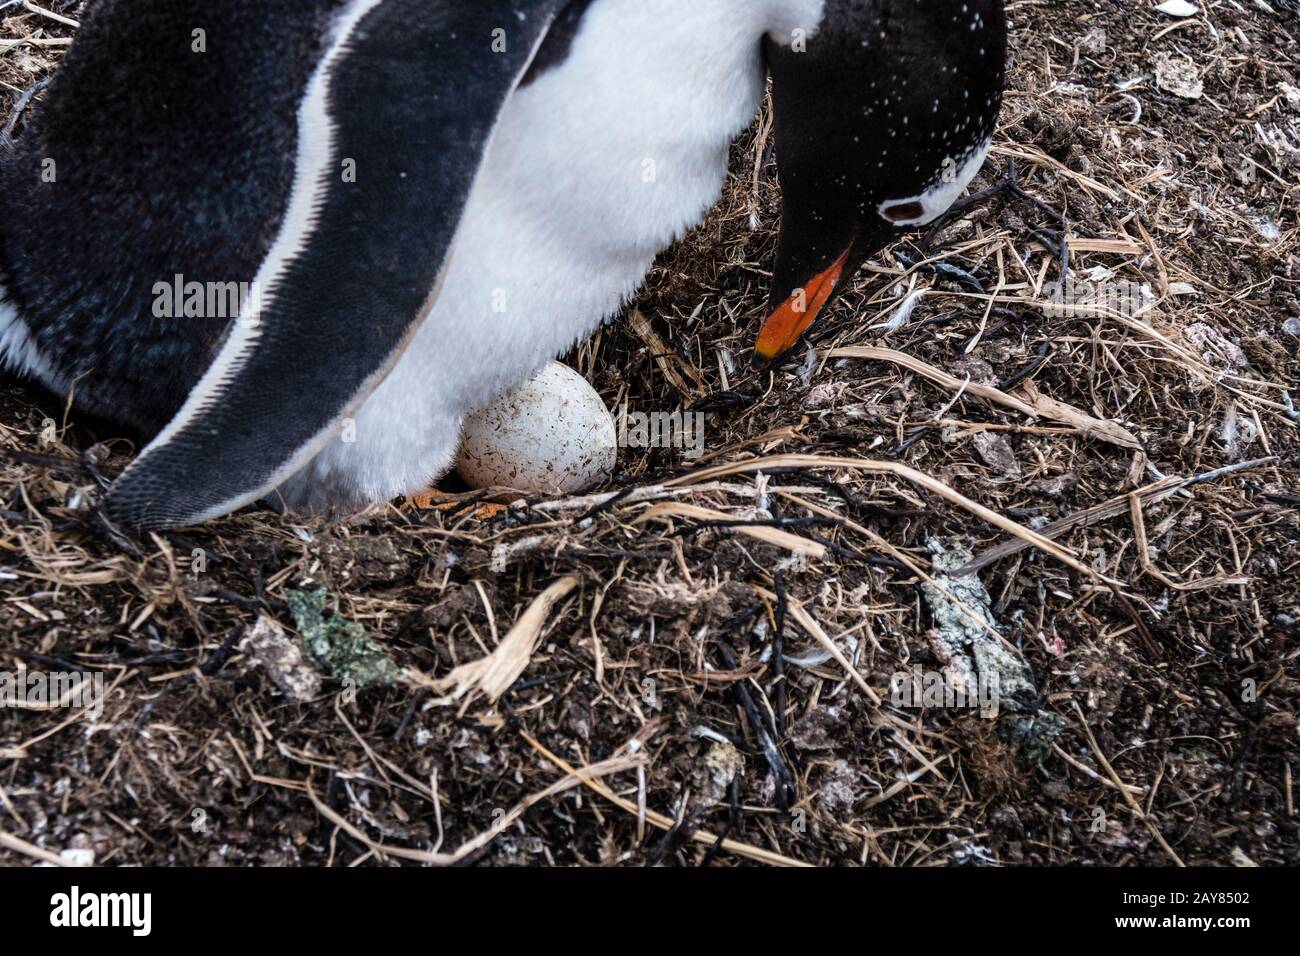 Pingüino Gentoo, Pygoscelis papua, comprobando el huevo en su nido, sea Lion Island, en las Islas Malvinas, Océano Atlántico Sur Foto de stock